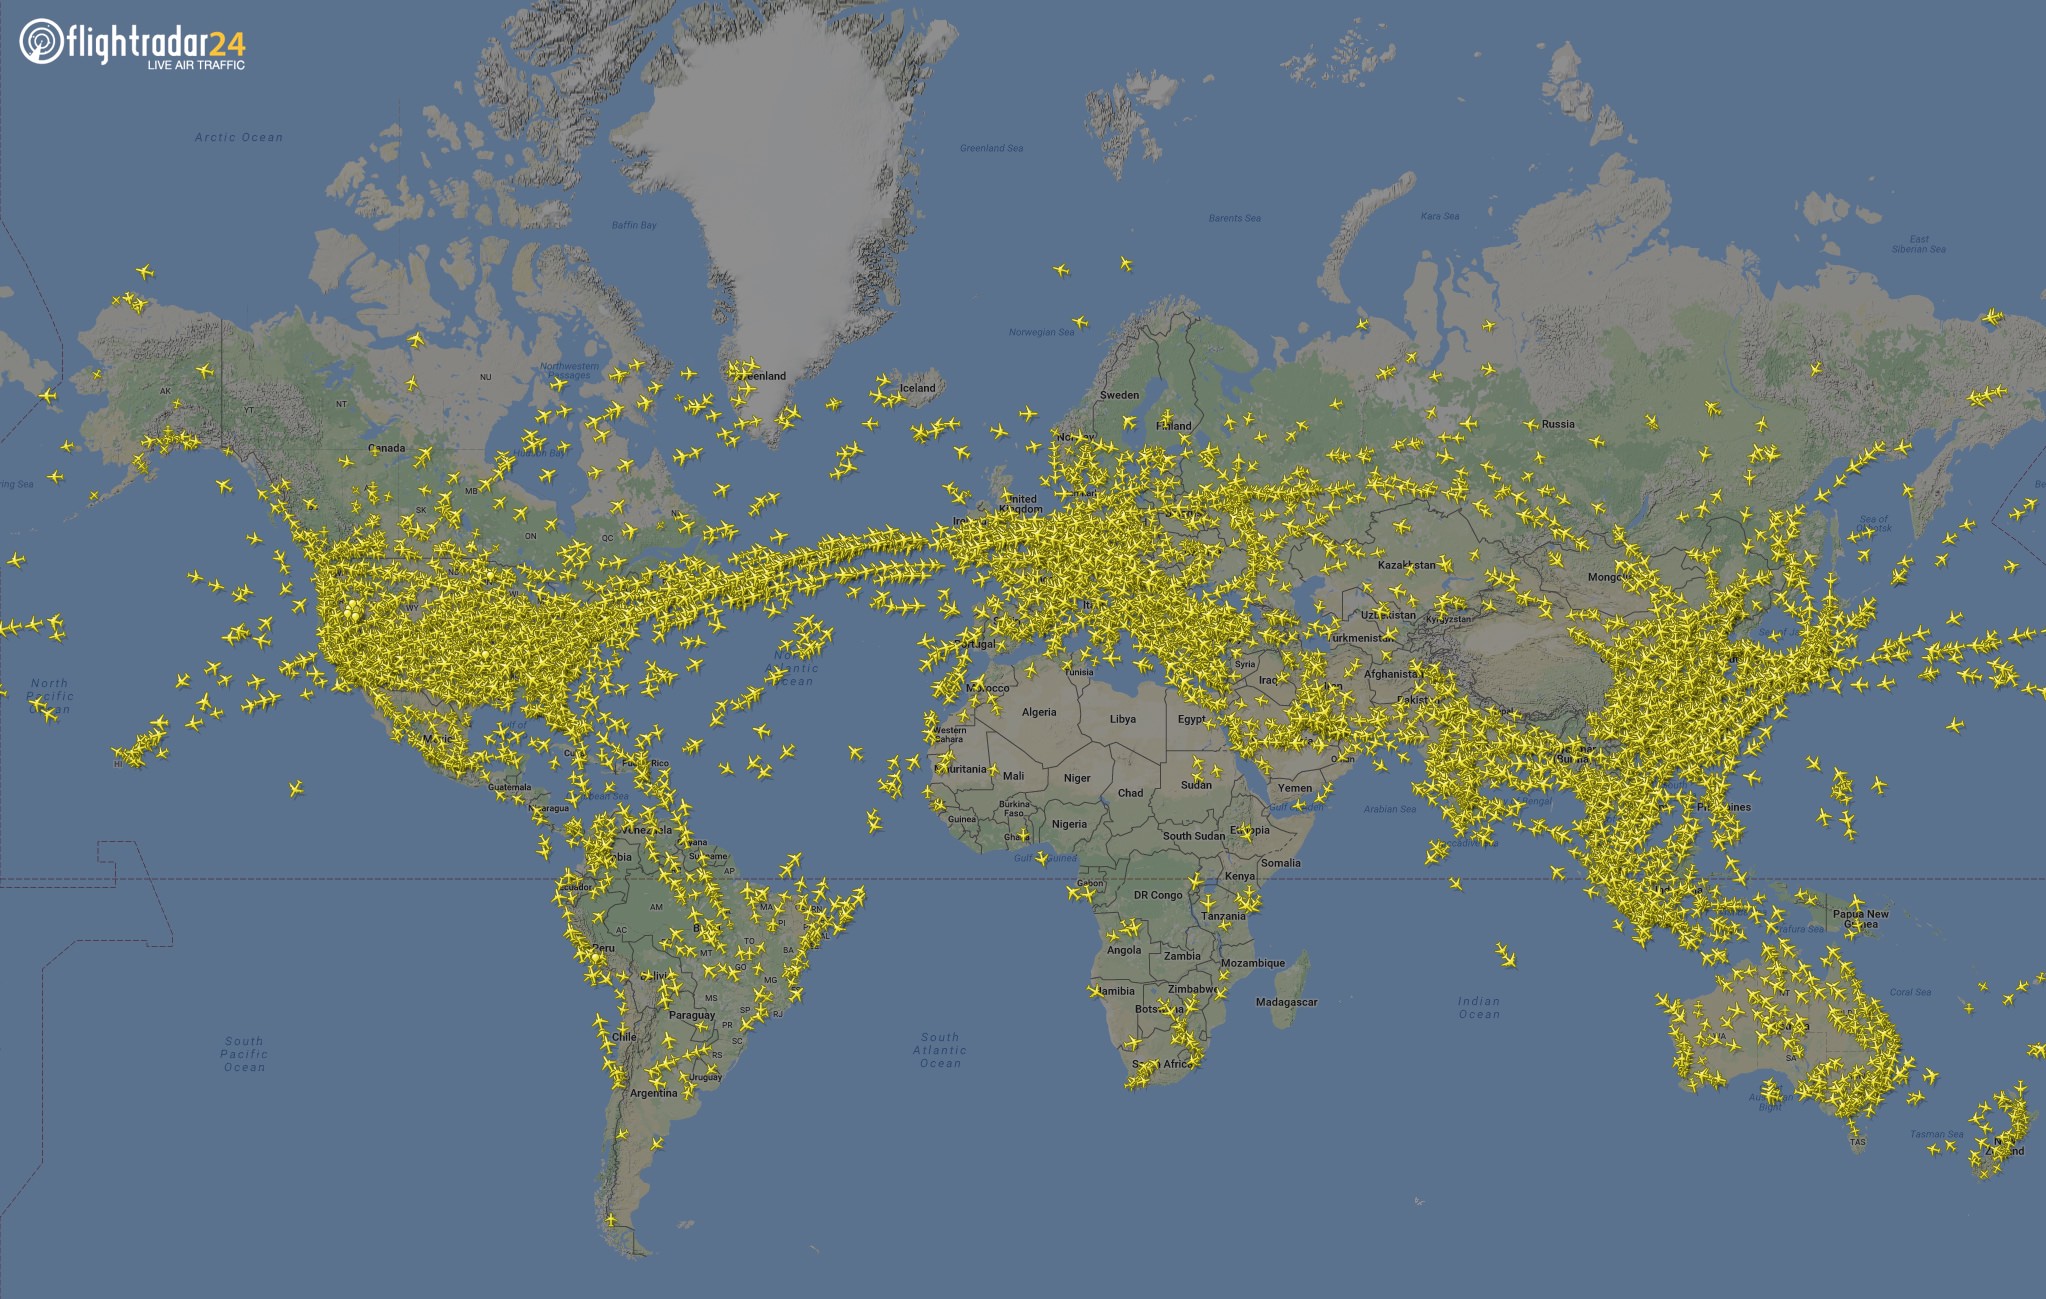 FlightRadar24 air traffic